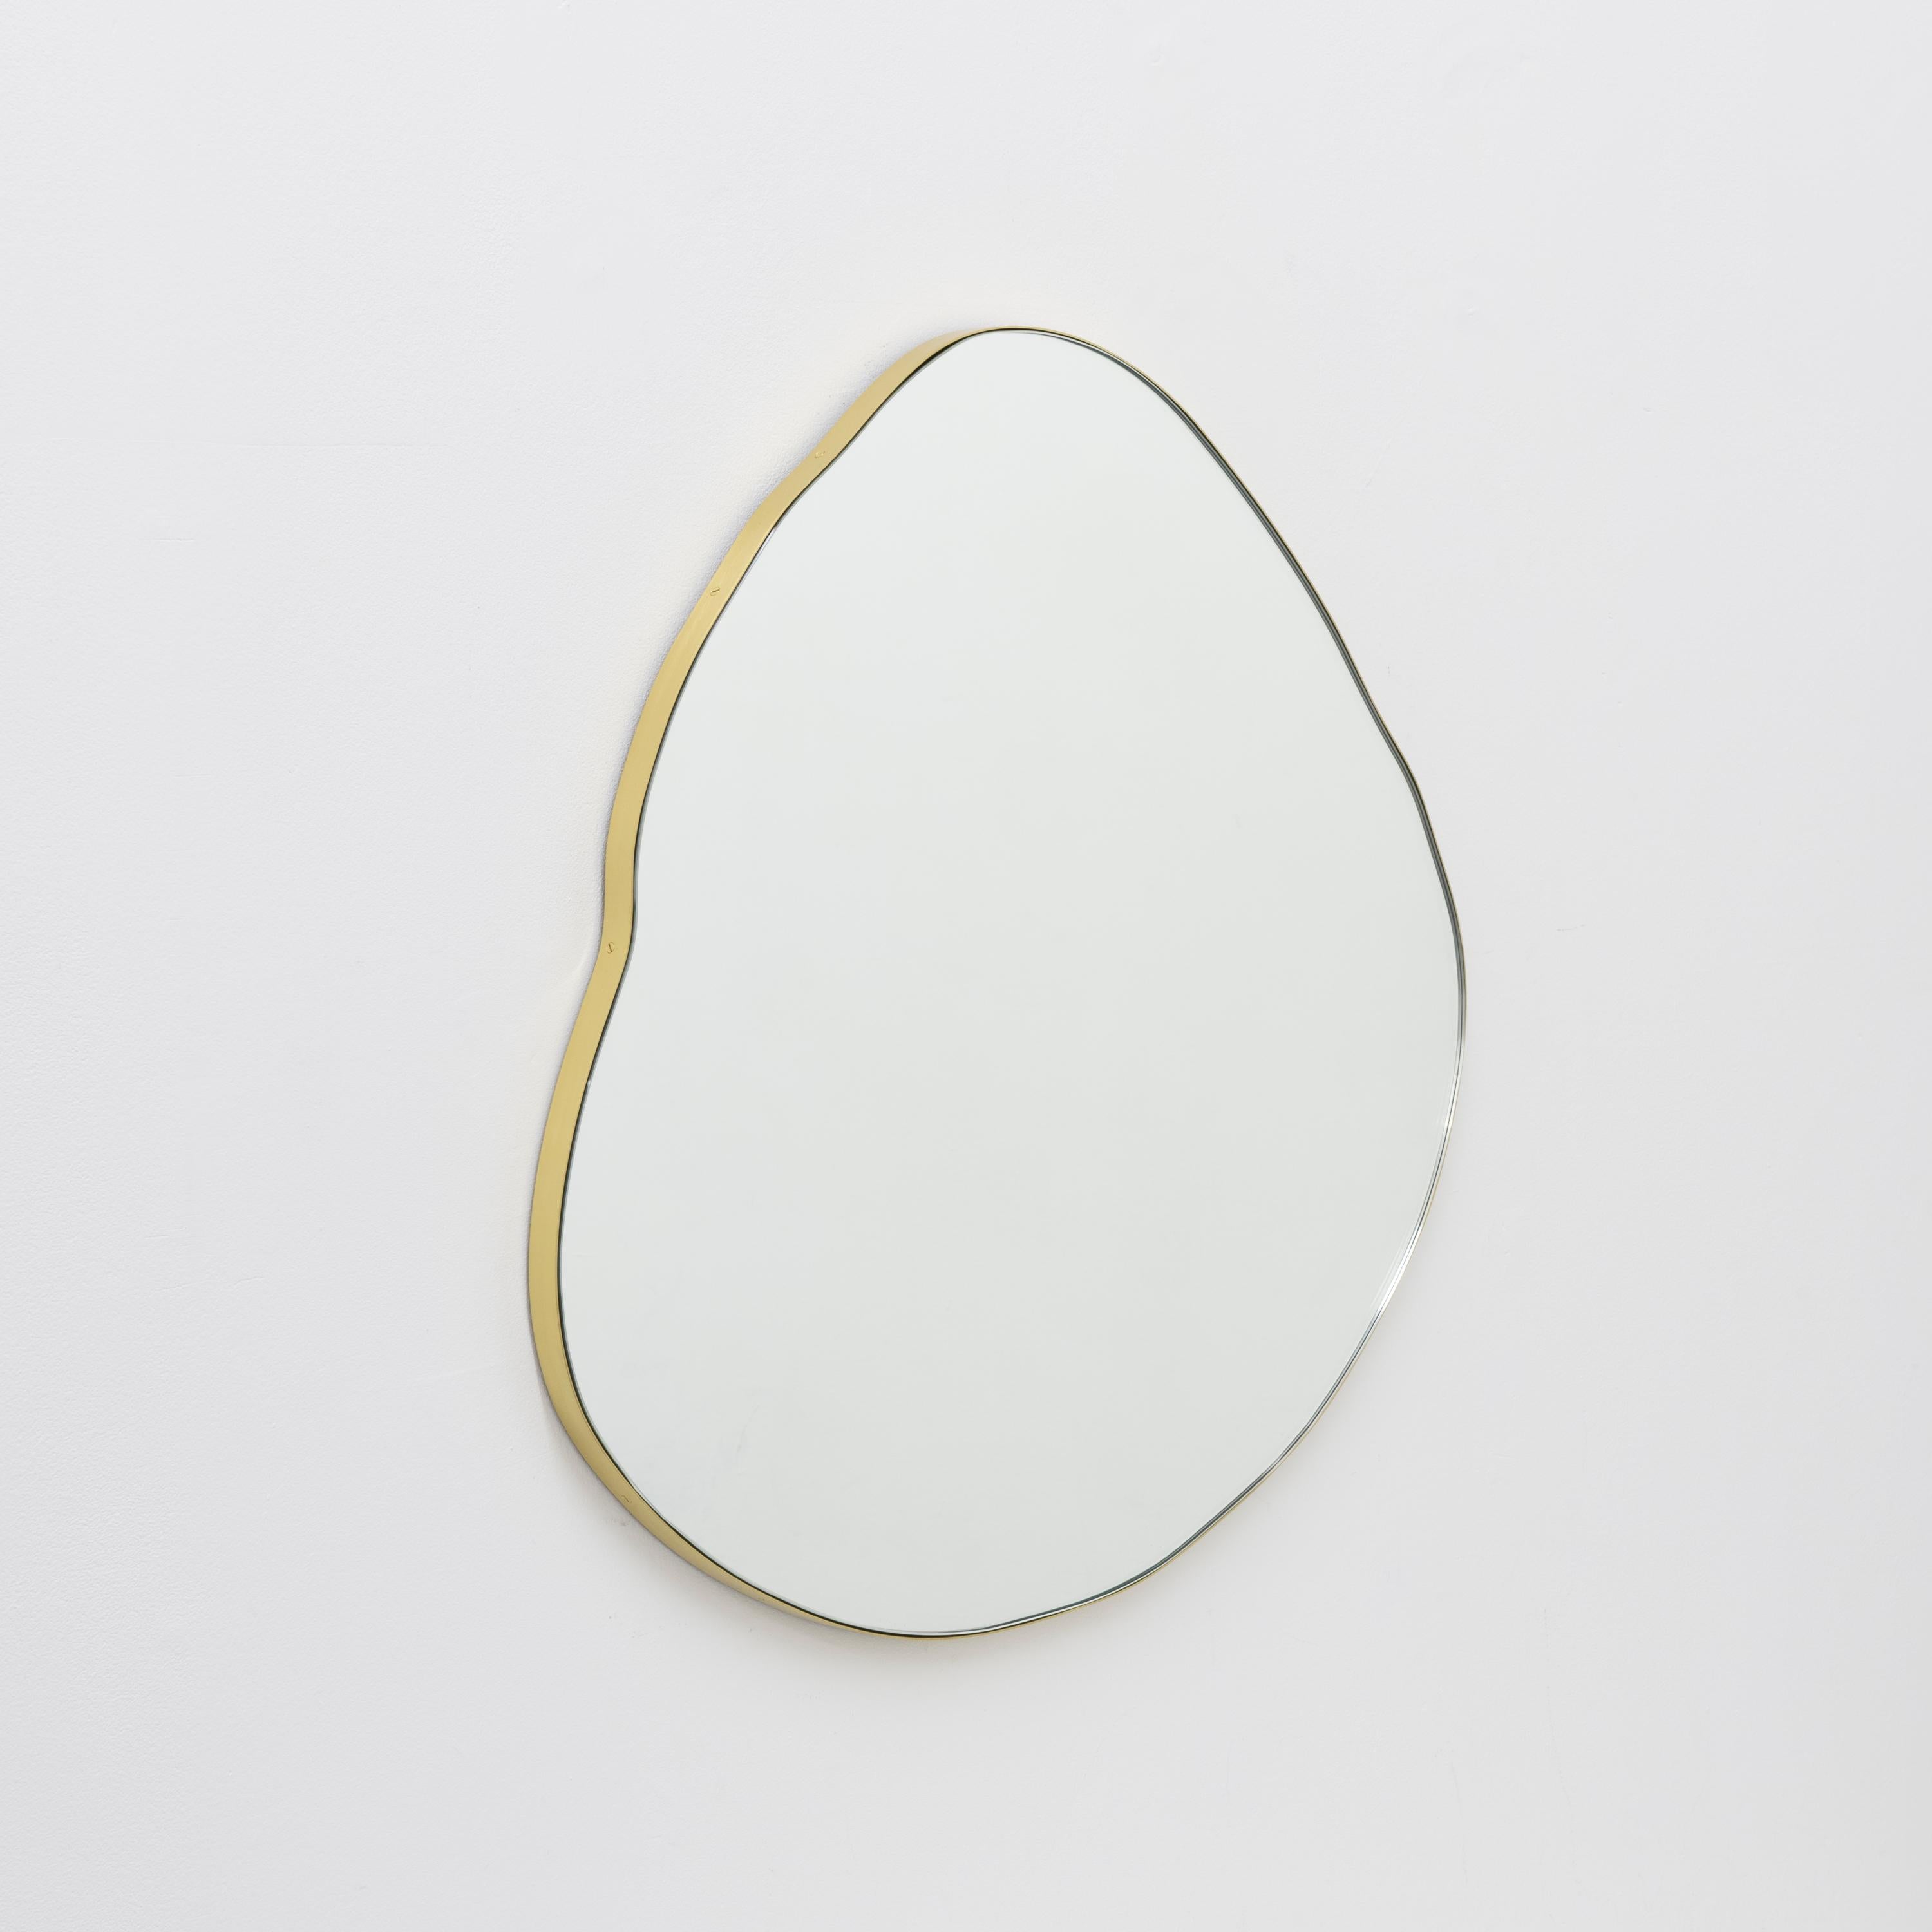 Miroir ludique et moderne de forme organique avec un cadre en laiton massif brossé.

Équipé d'un crochet en laiton ou d'une barre en Z en aluminium (selon la taille du miroir) qui permet de suspendre le miroir dans quatre positions différentes.